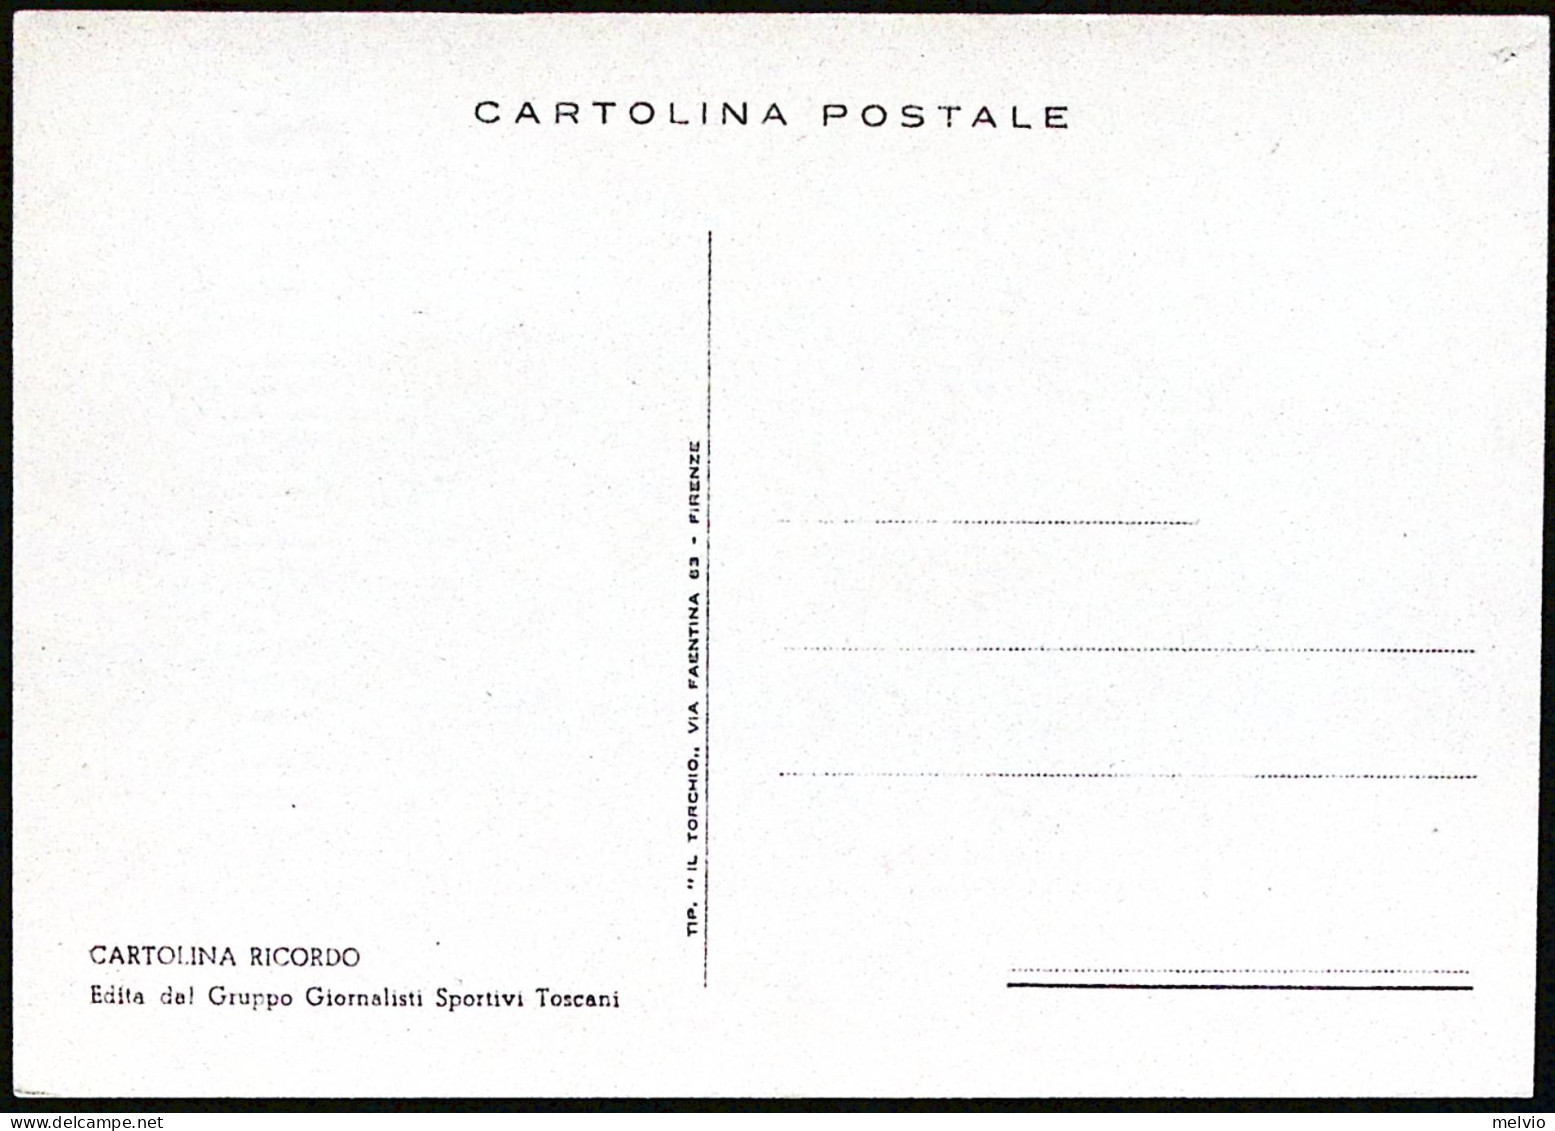 1952-FIRENZE ITALIA-INGHILTERRA, Cartolina Ricordo Della Partita, Non Viaggiata - Manifestations